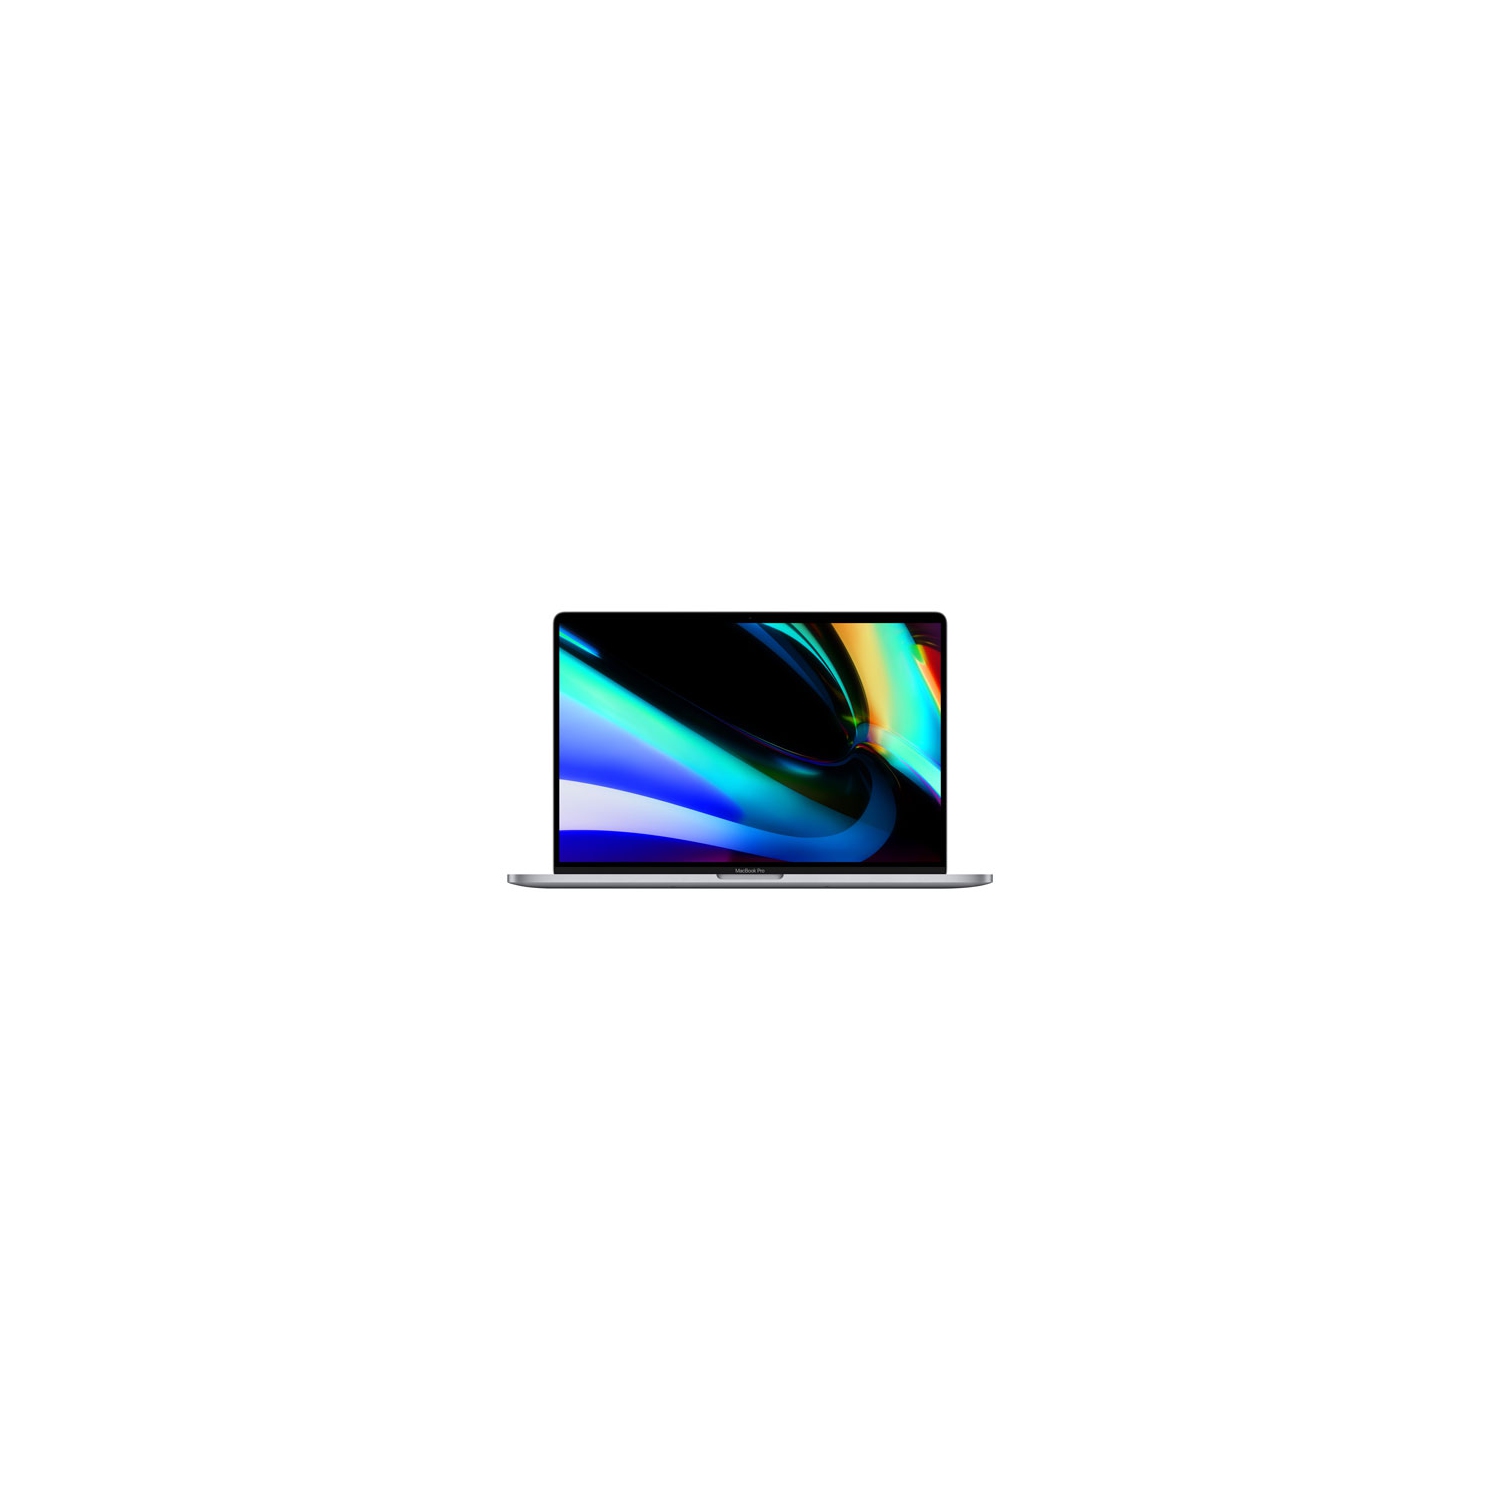 Apple MacBook Pro w/ Touch Bar 16" - Space Grey (Intel Core i7 2.6GHz/512GB SSD/16GB RAM) - EN (2019 Model) - Open Box